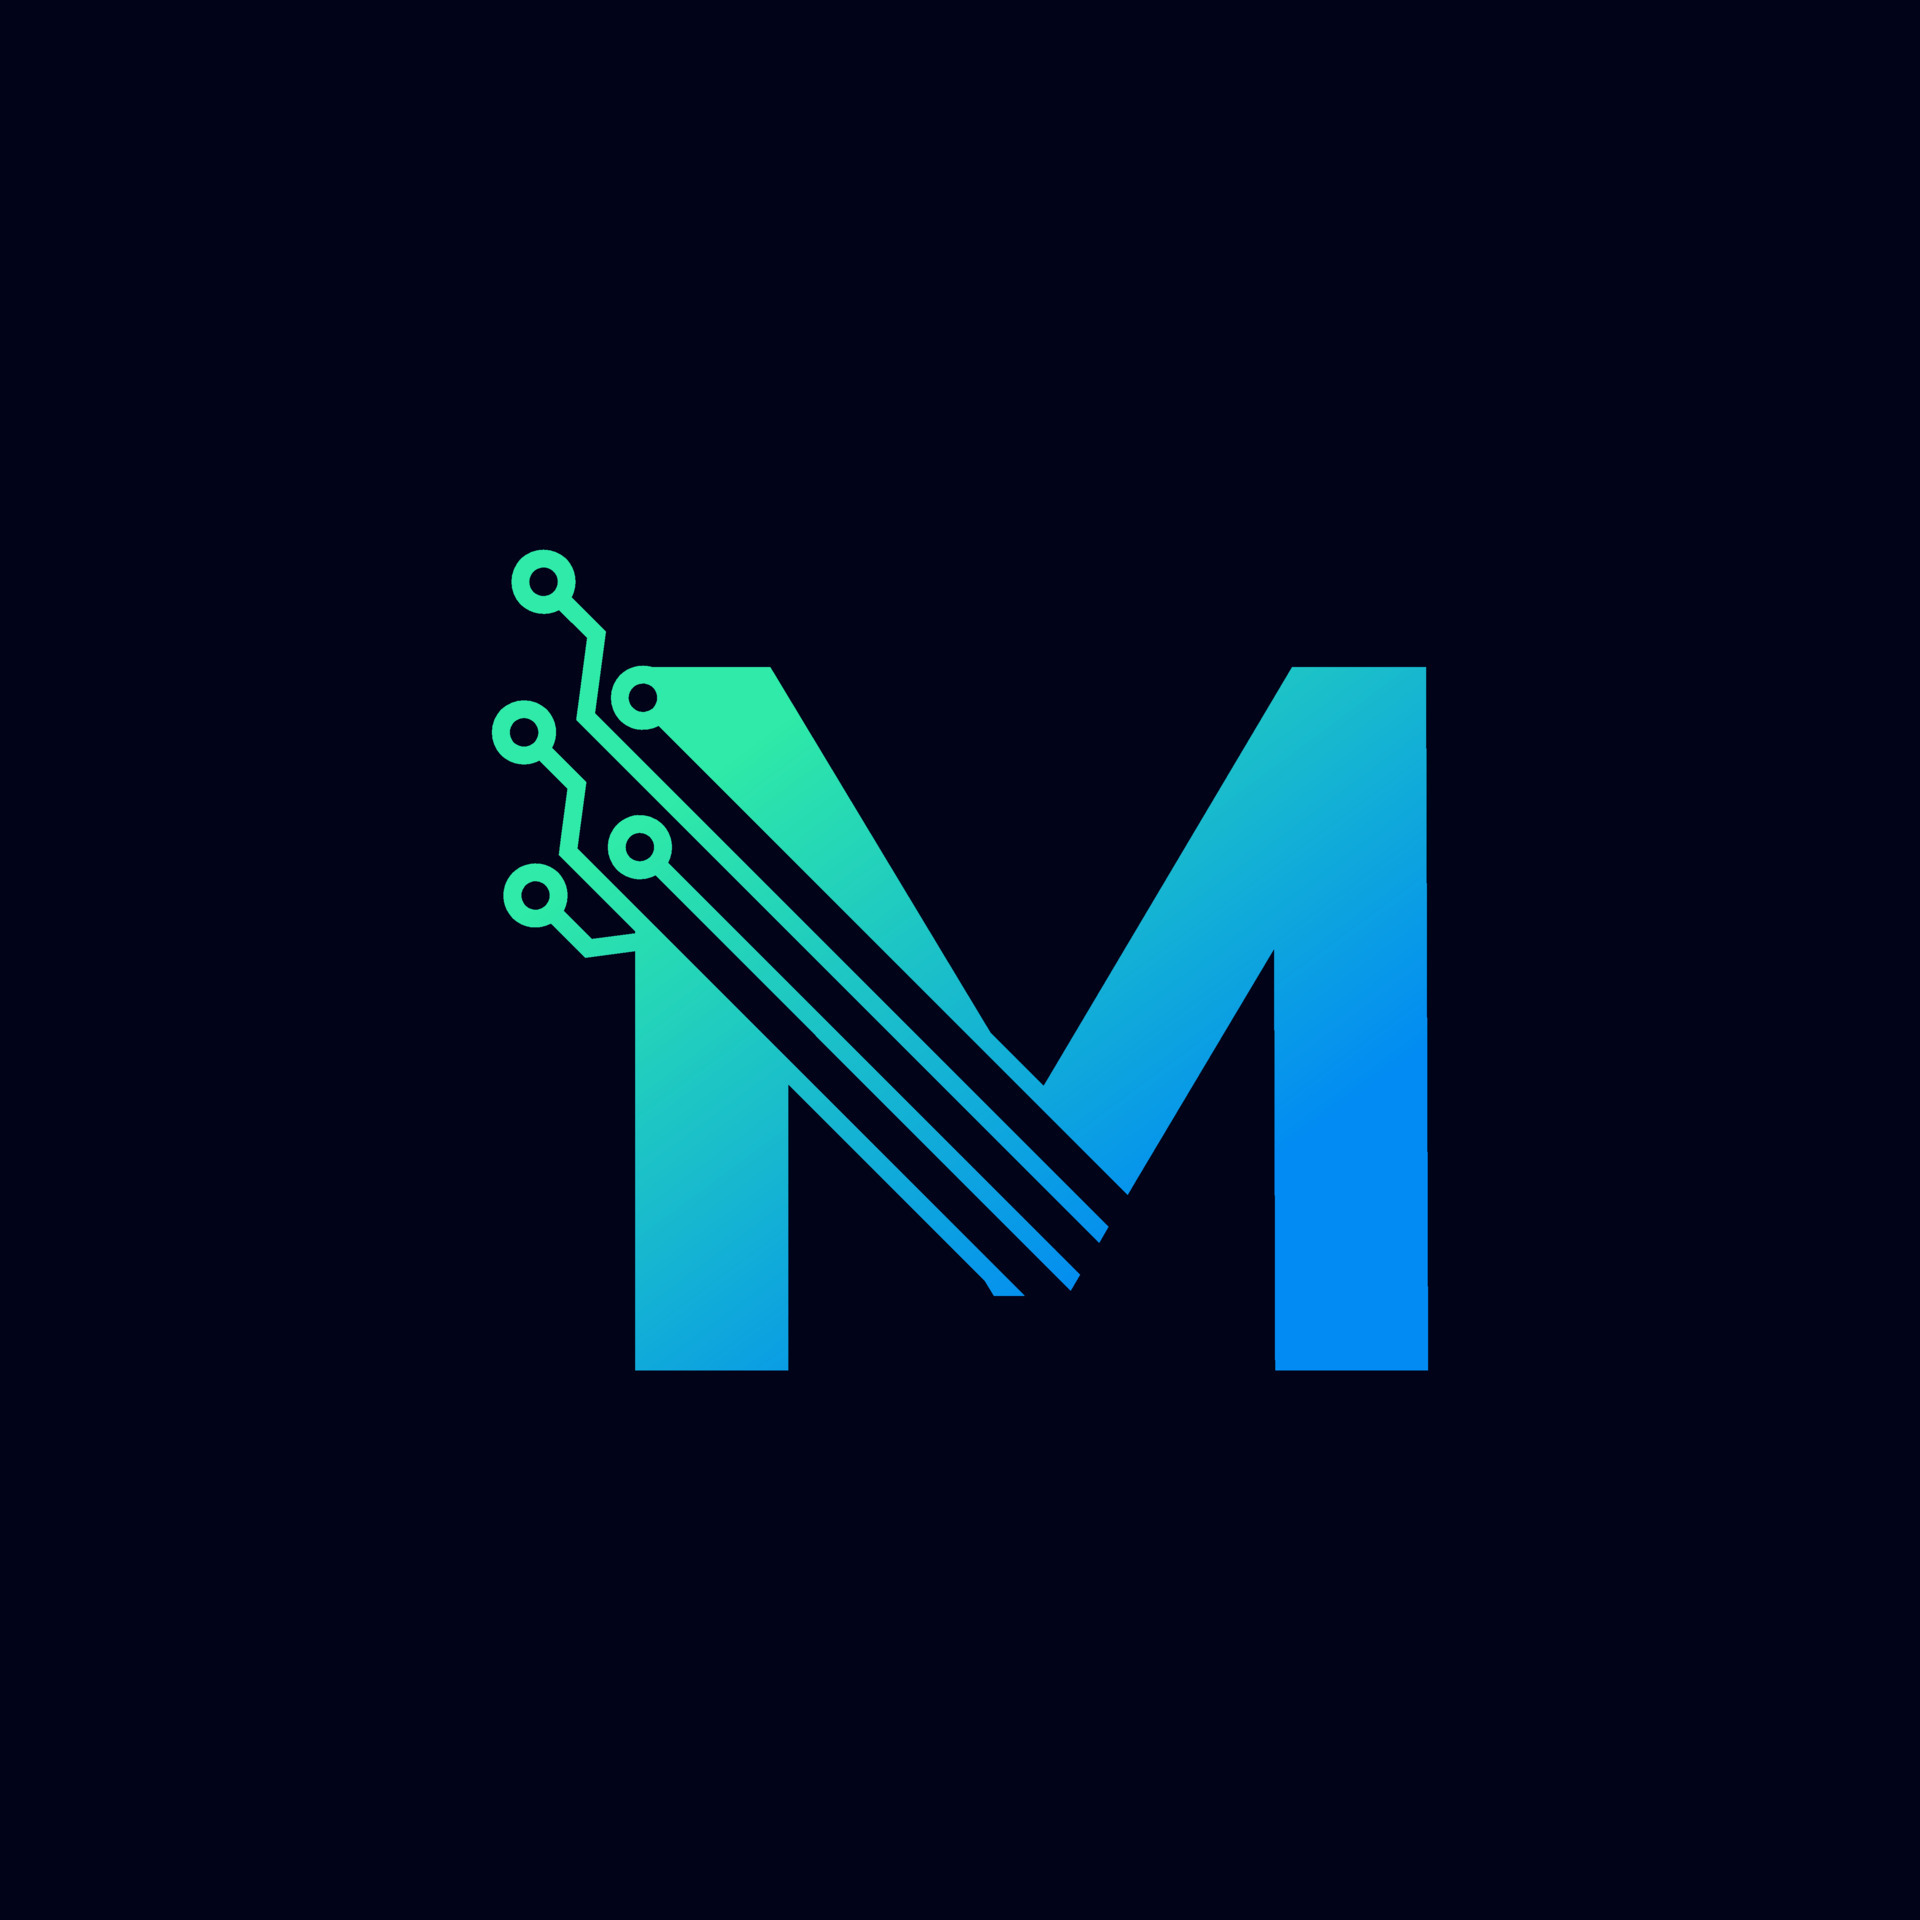 blue letter m logos